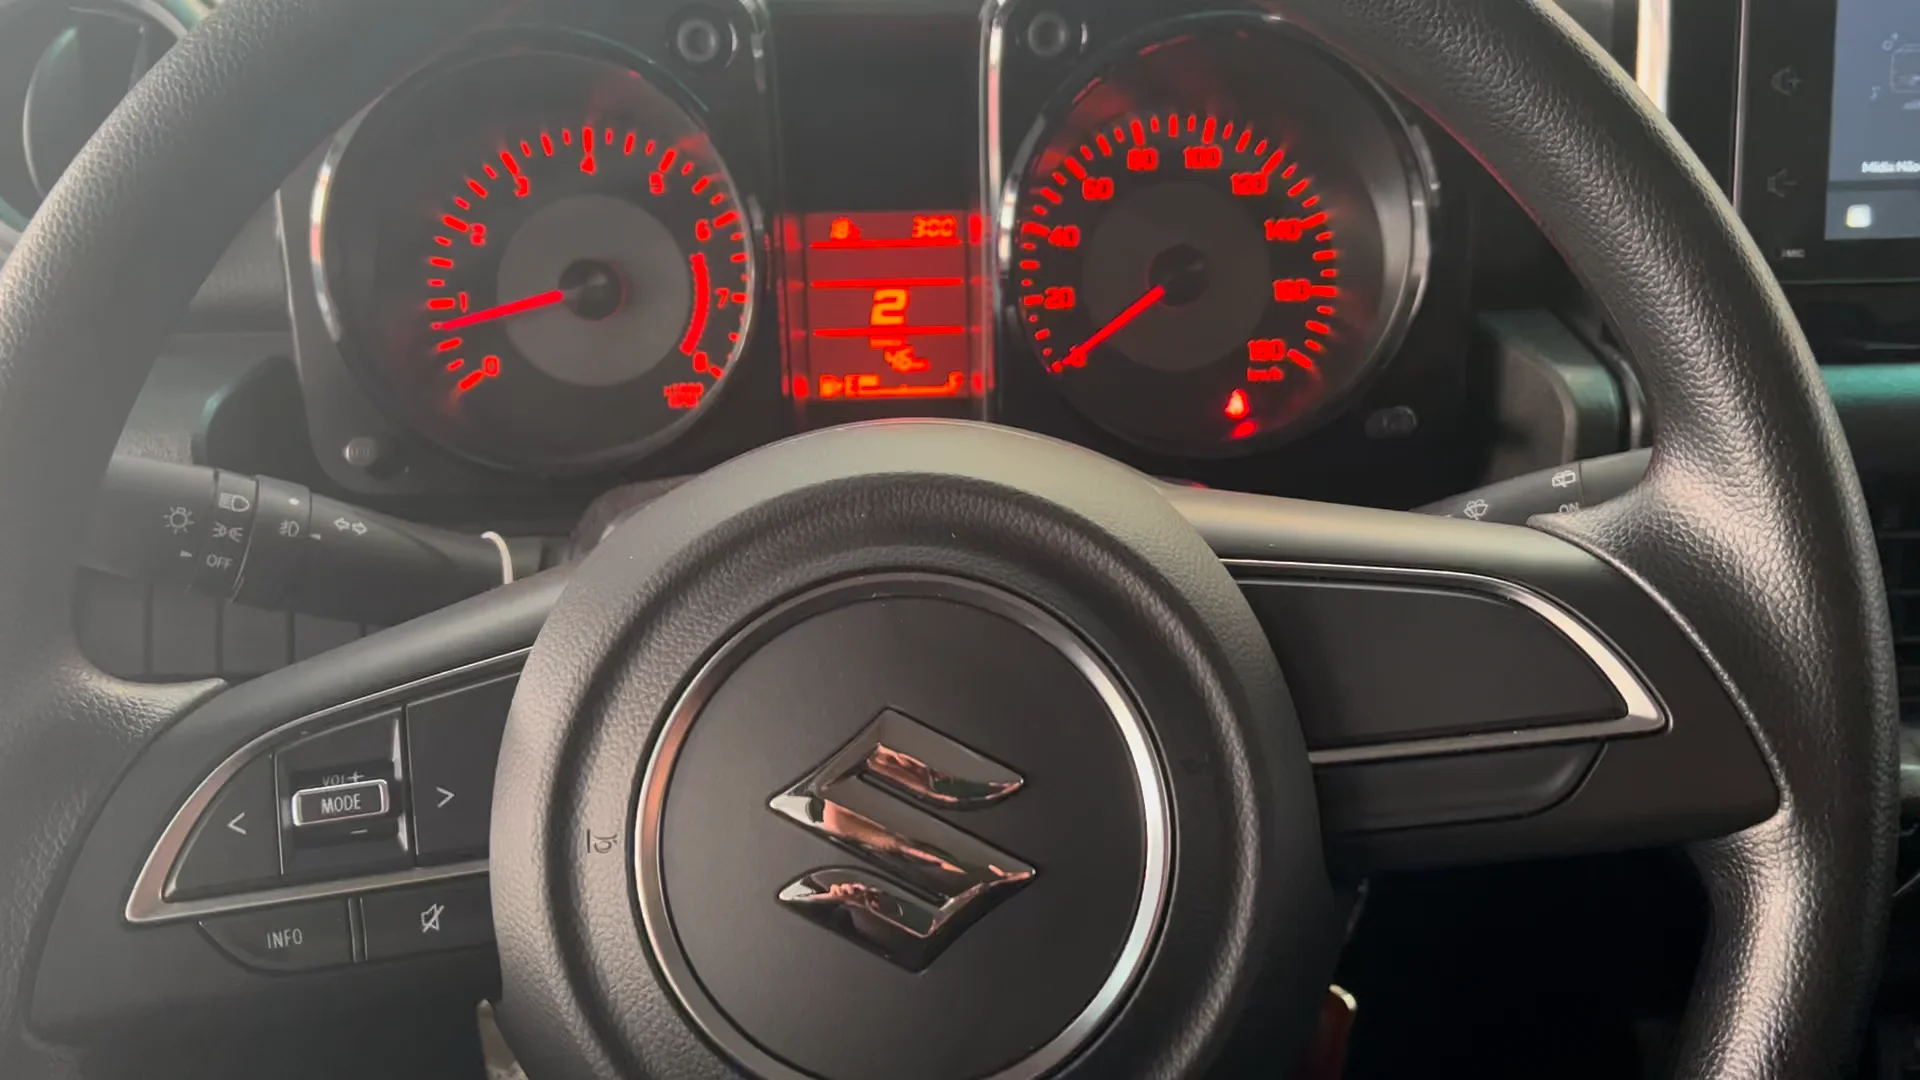 Fiat 500 - Pioneer com Apple CarPlay on Vimeo